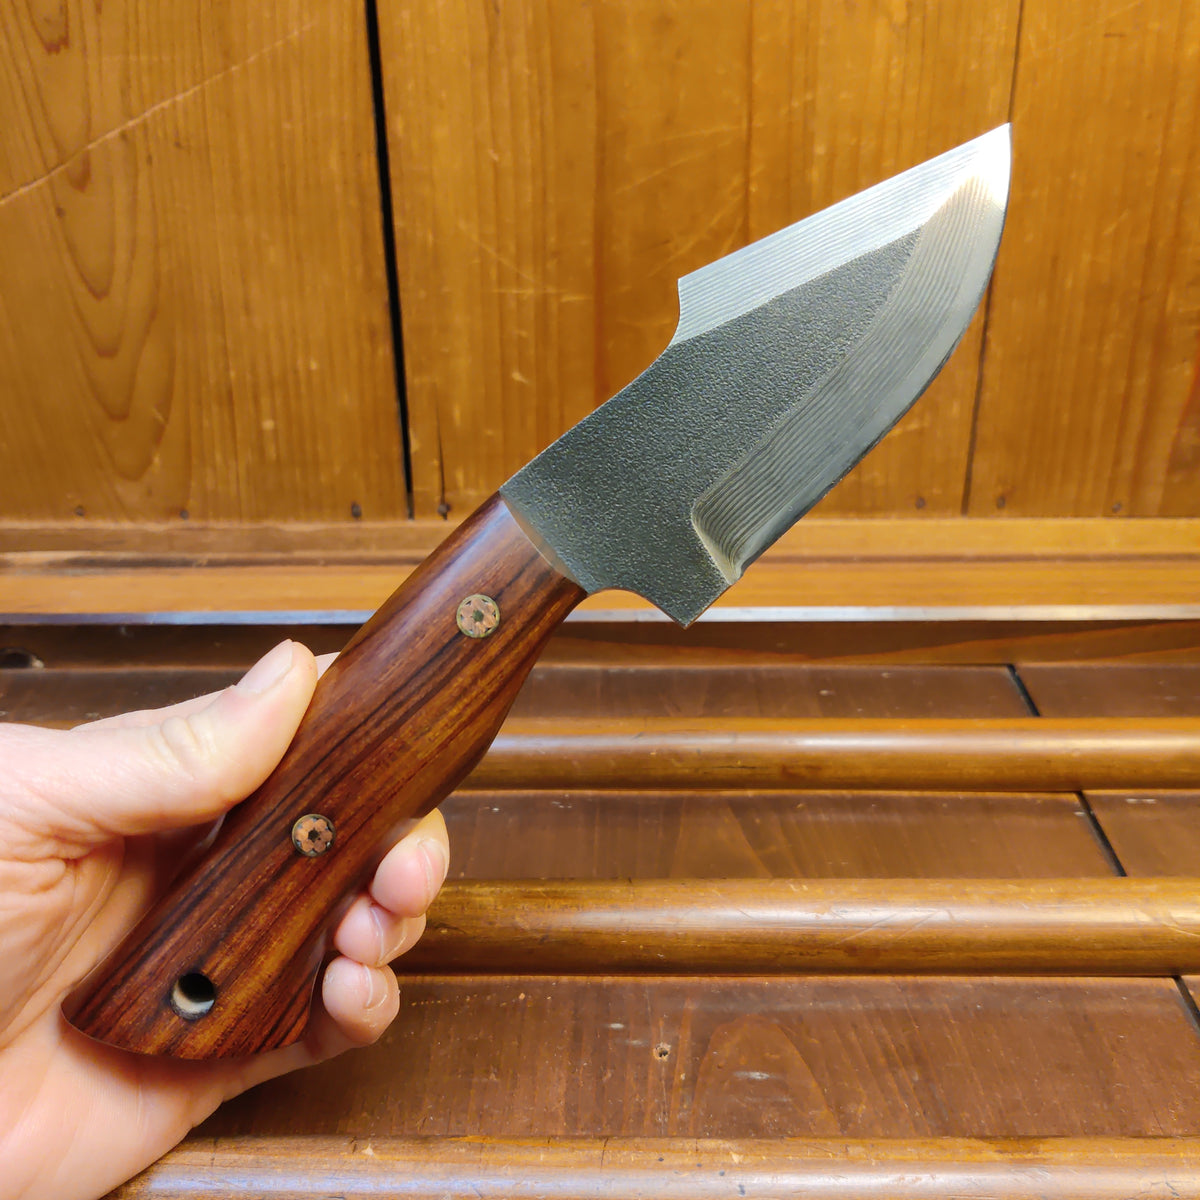 Nigara Hamono 95mm Outdoor Knife SG2 Suminagashi with Leather Sheath